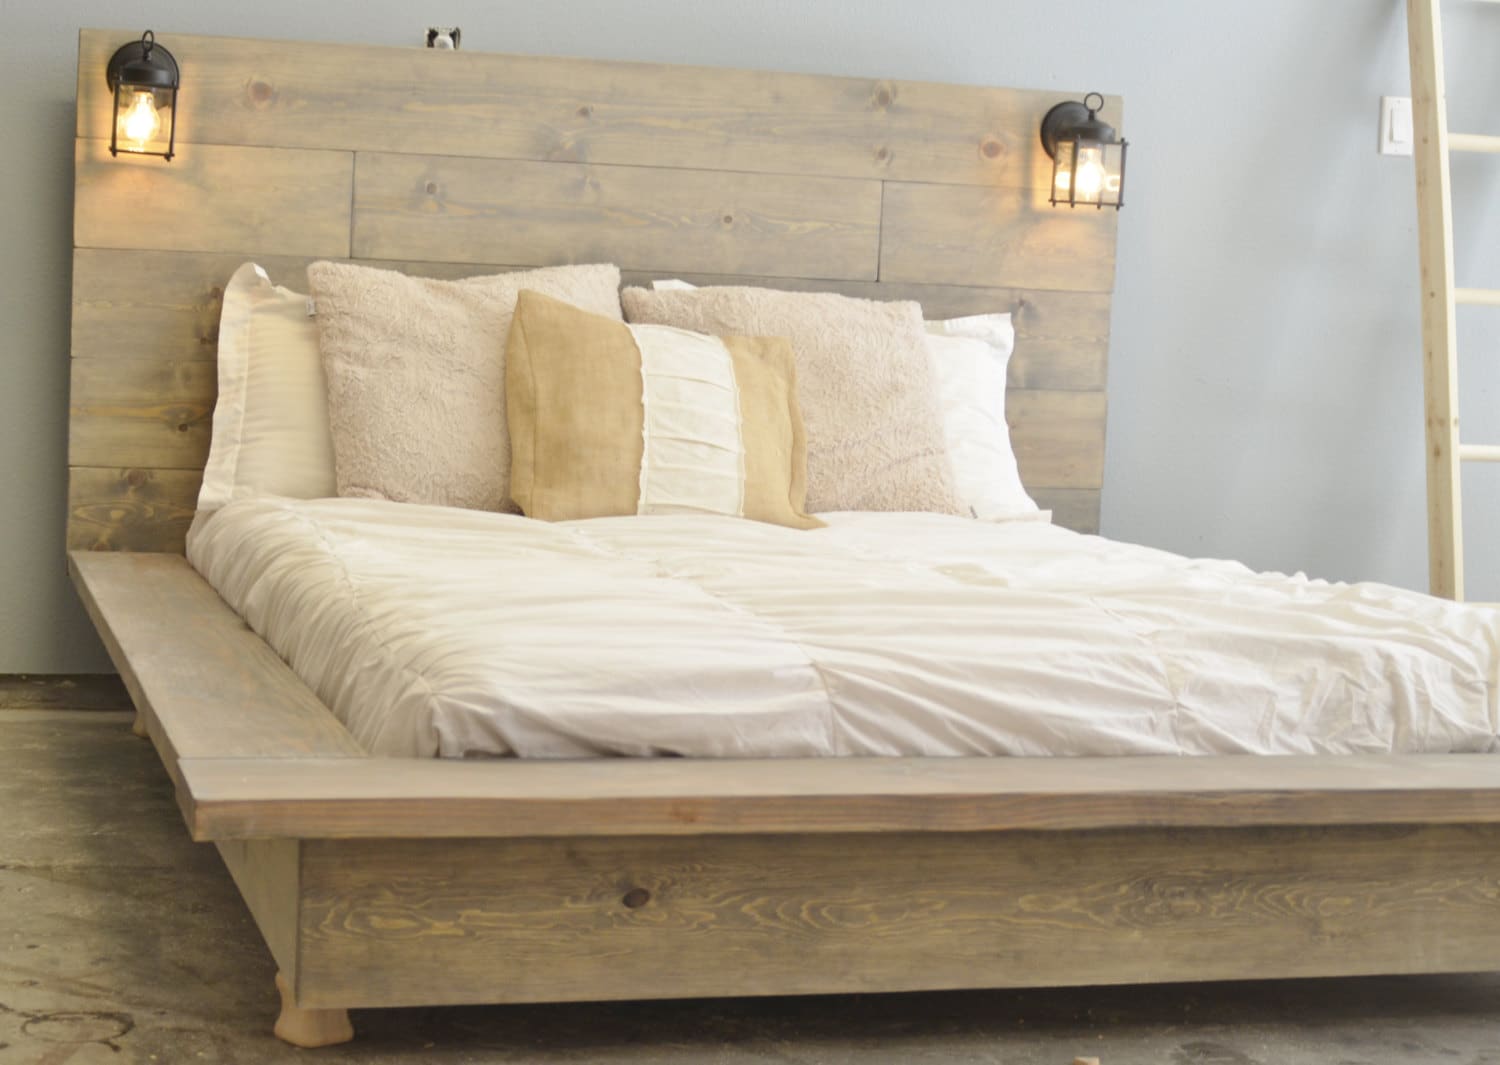 Sale 20% off Floating Wood Platform Bed frame with Lighted ...